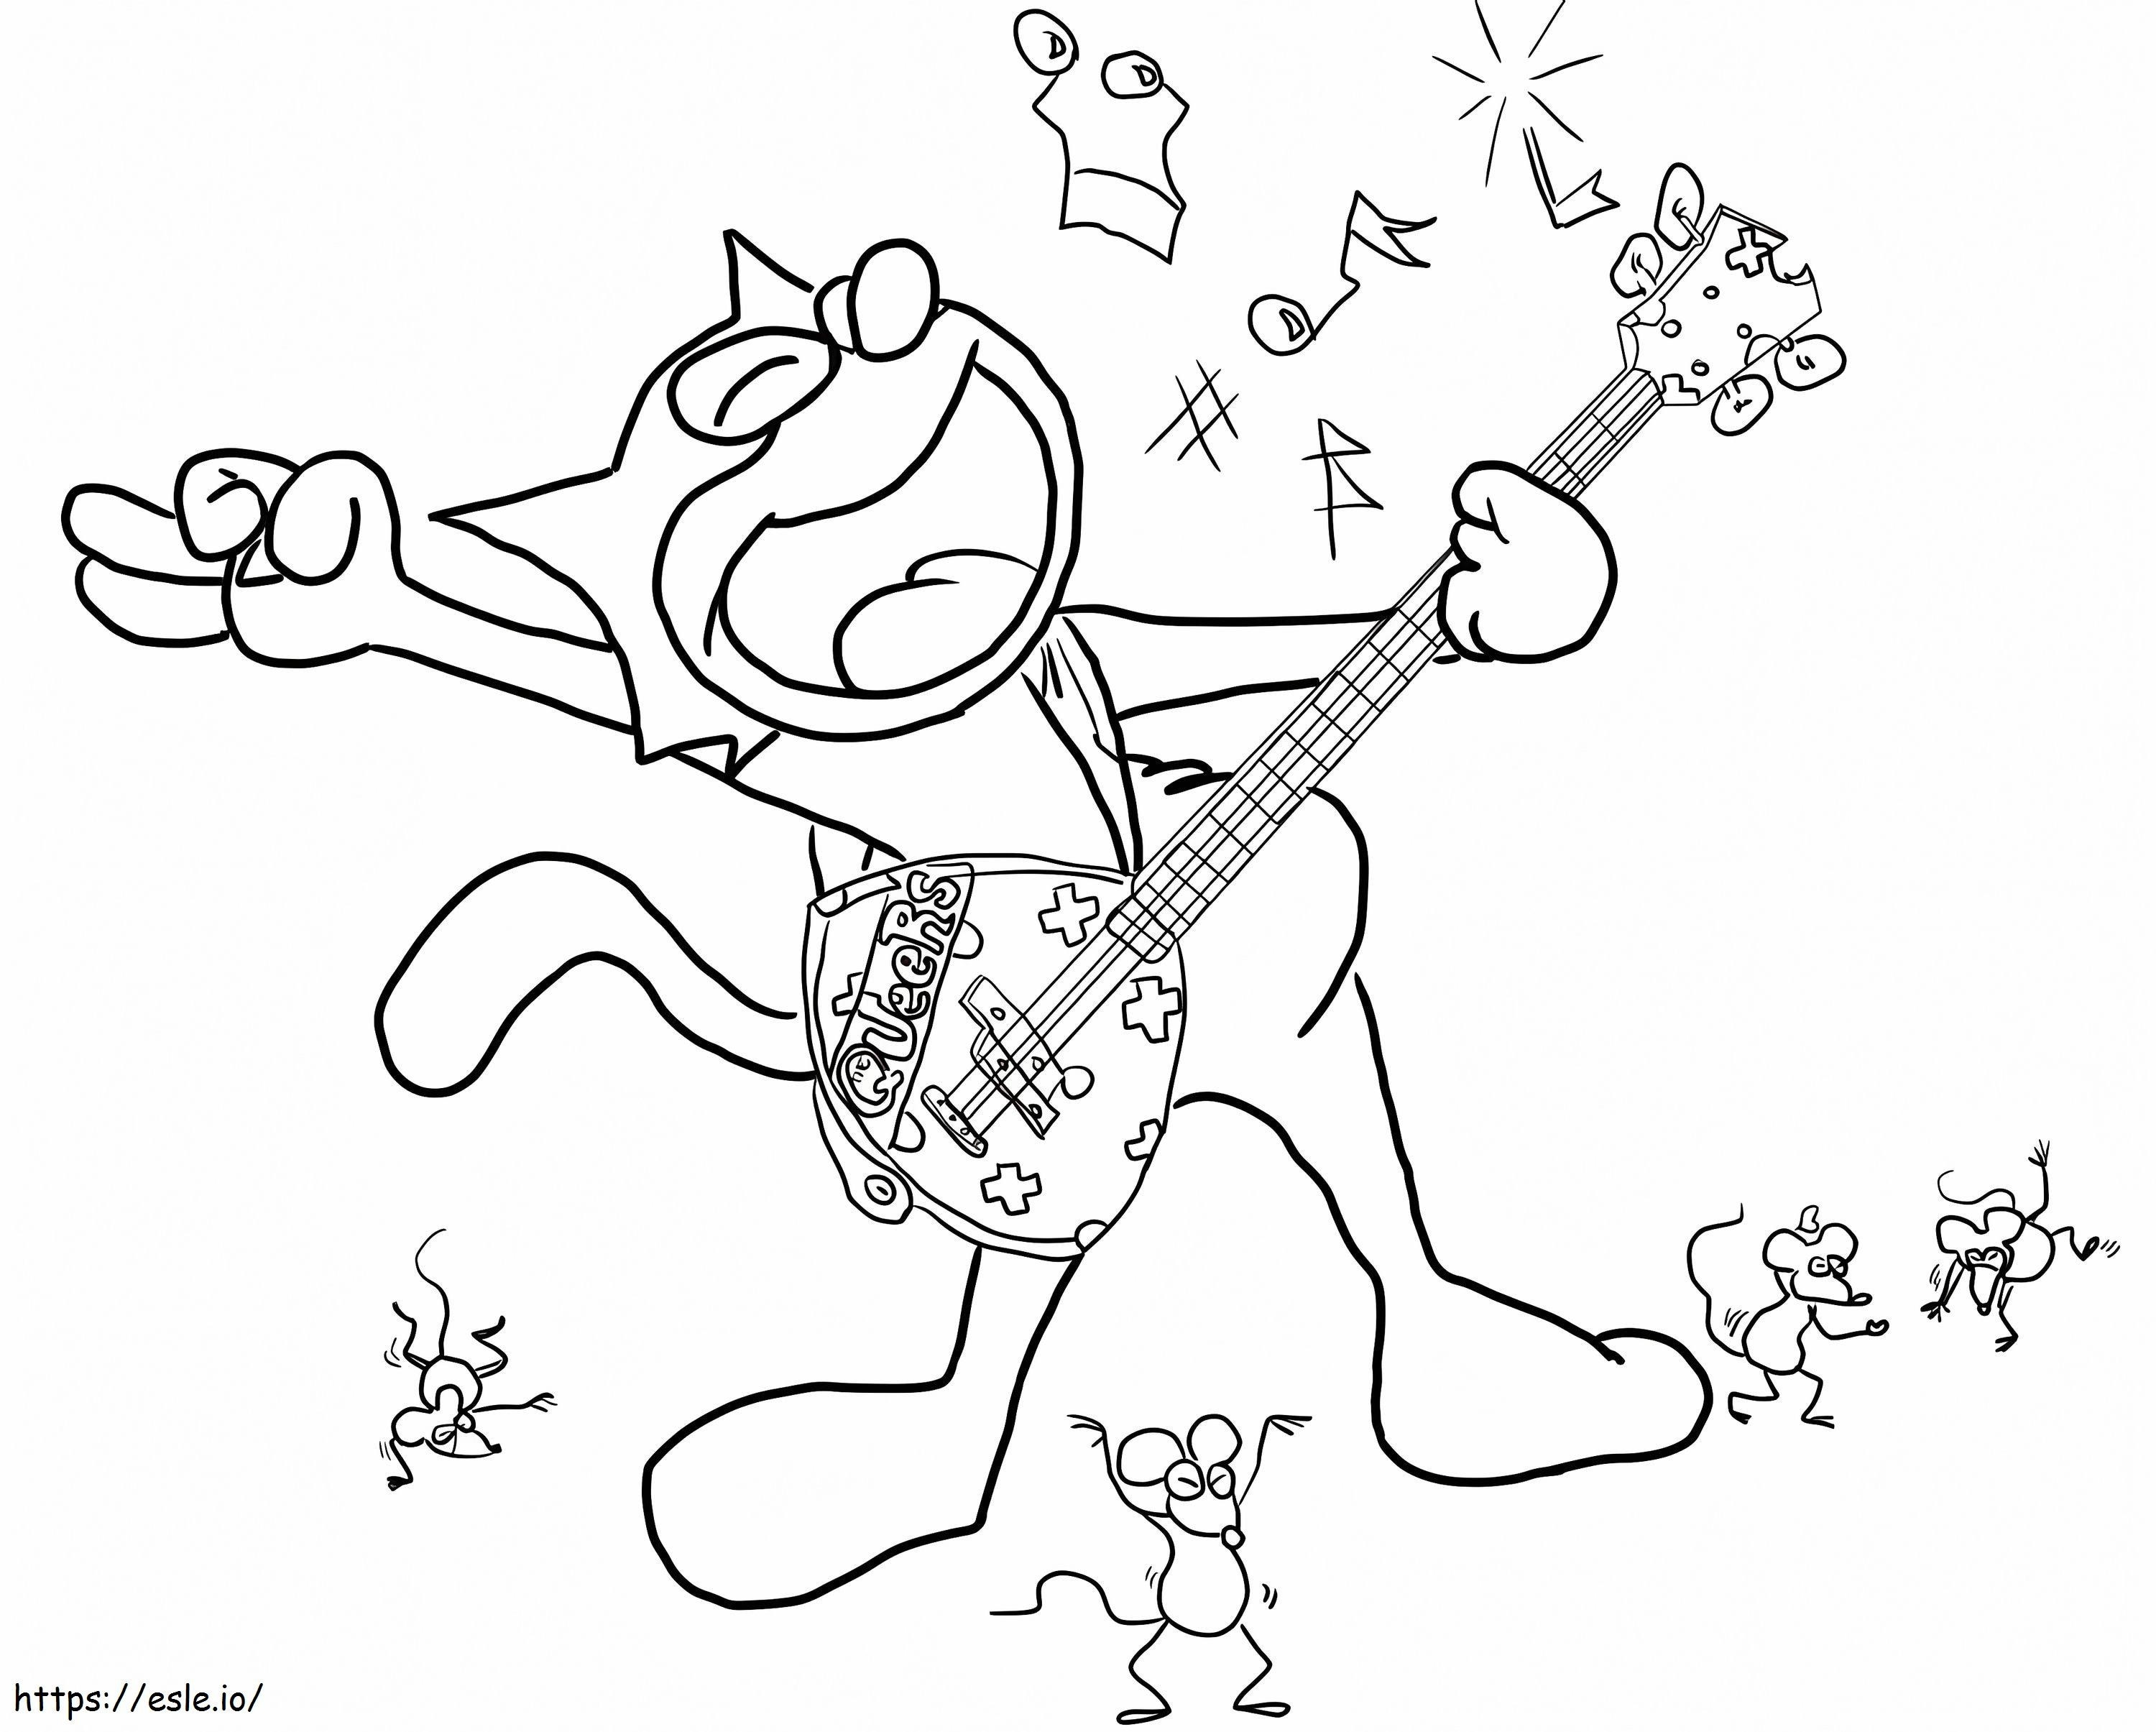 Felix Gitar Çalan Kedi boyama